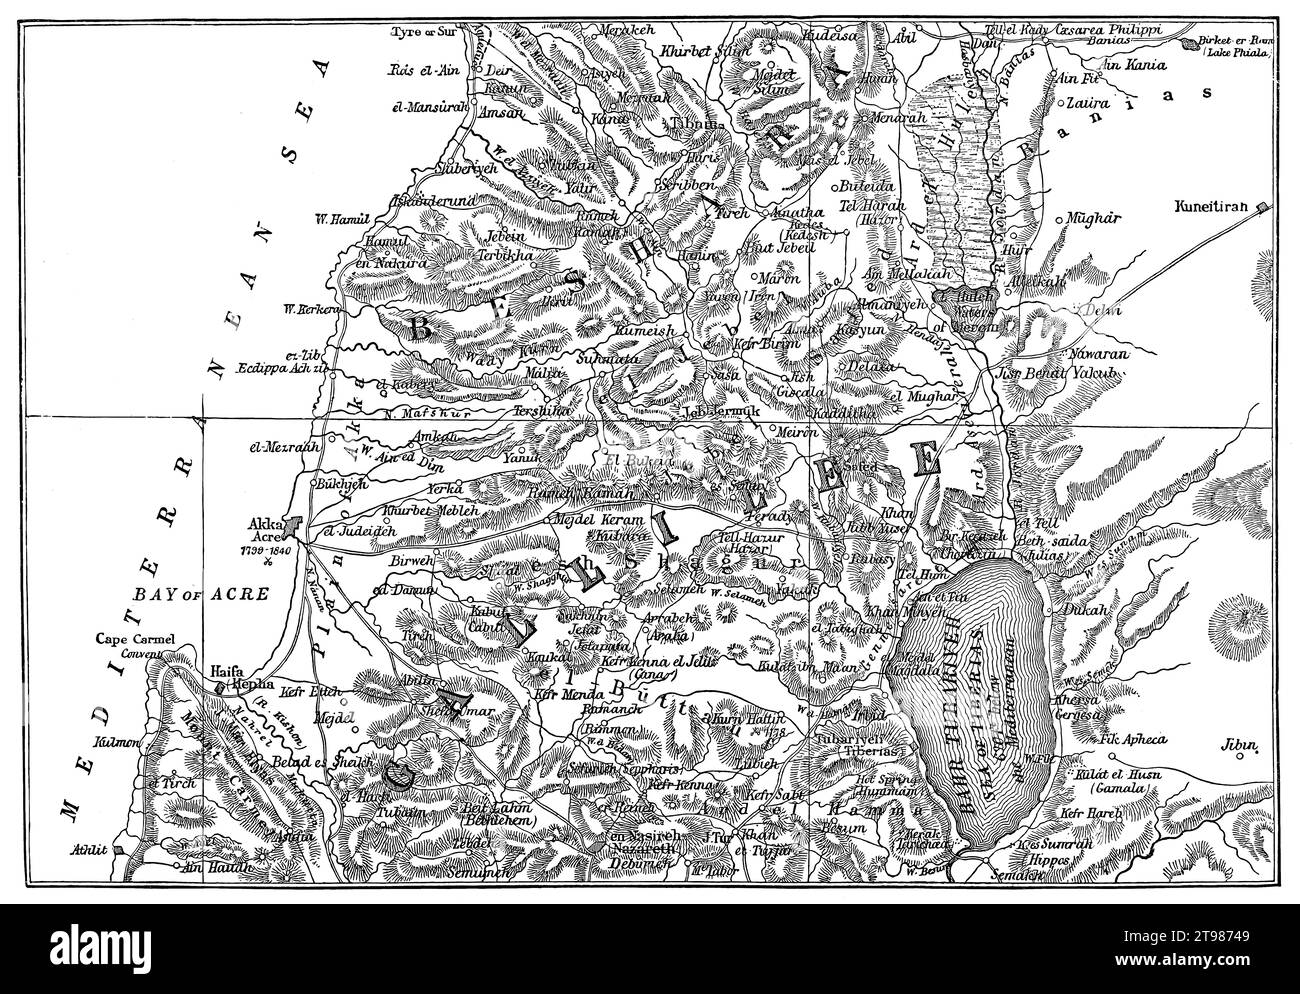 Mappa storica della Galilea, Israele settentrionale e Libano meridionale, 1859 Foto Stock